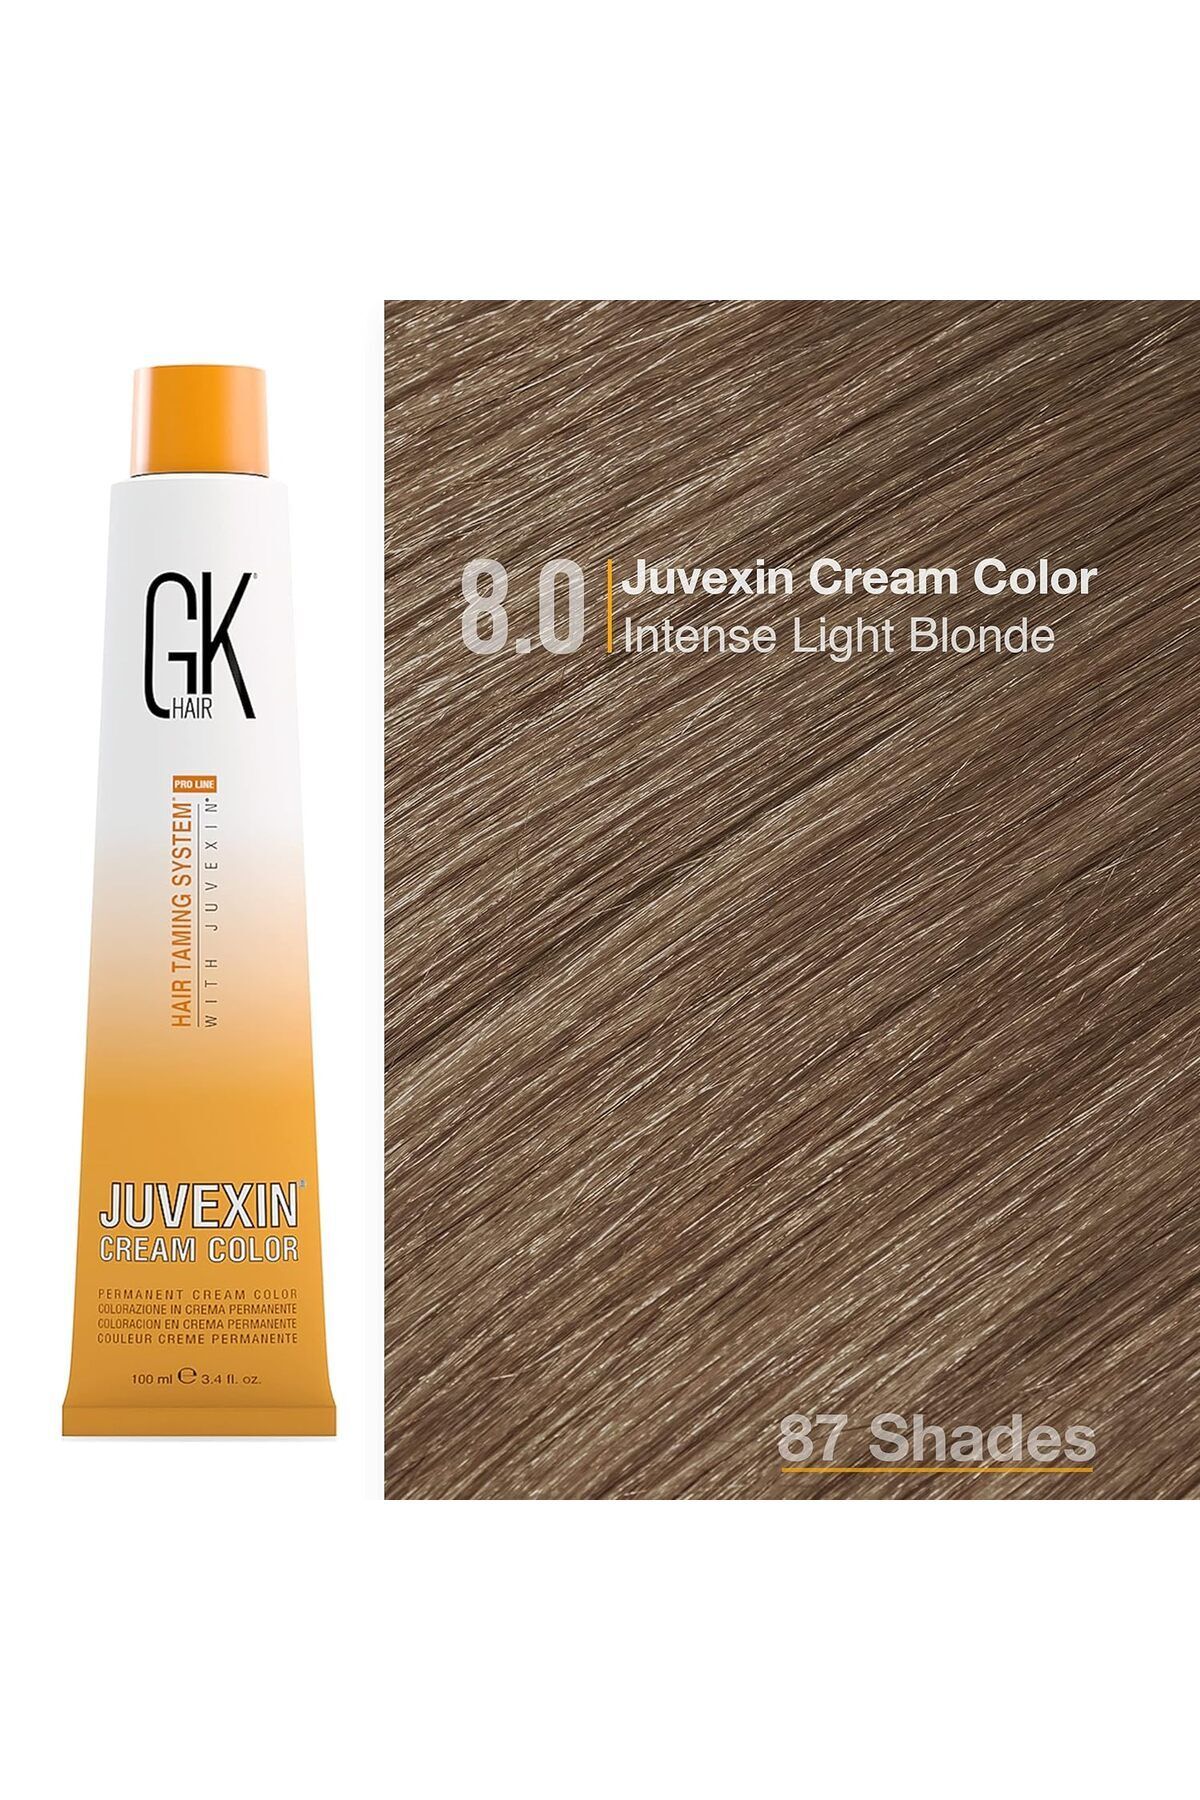 GK HAIR Juvexin Cream Color Saç Boyası 100 Ml 8.0 Yoğun Açık Sarı